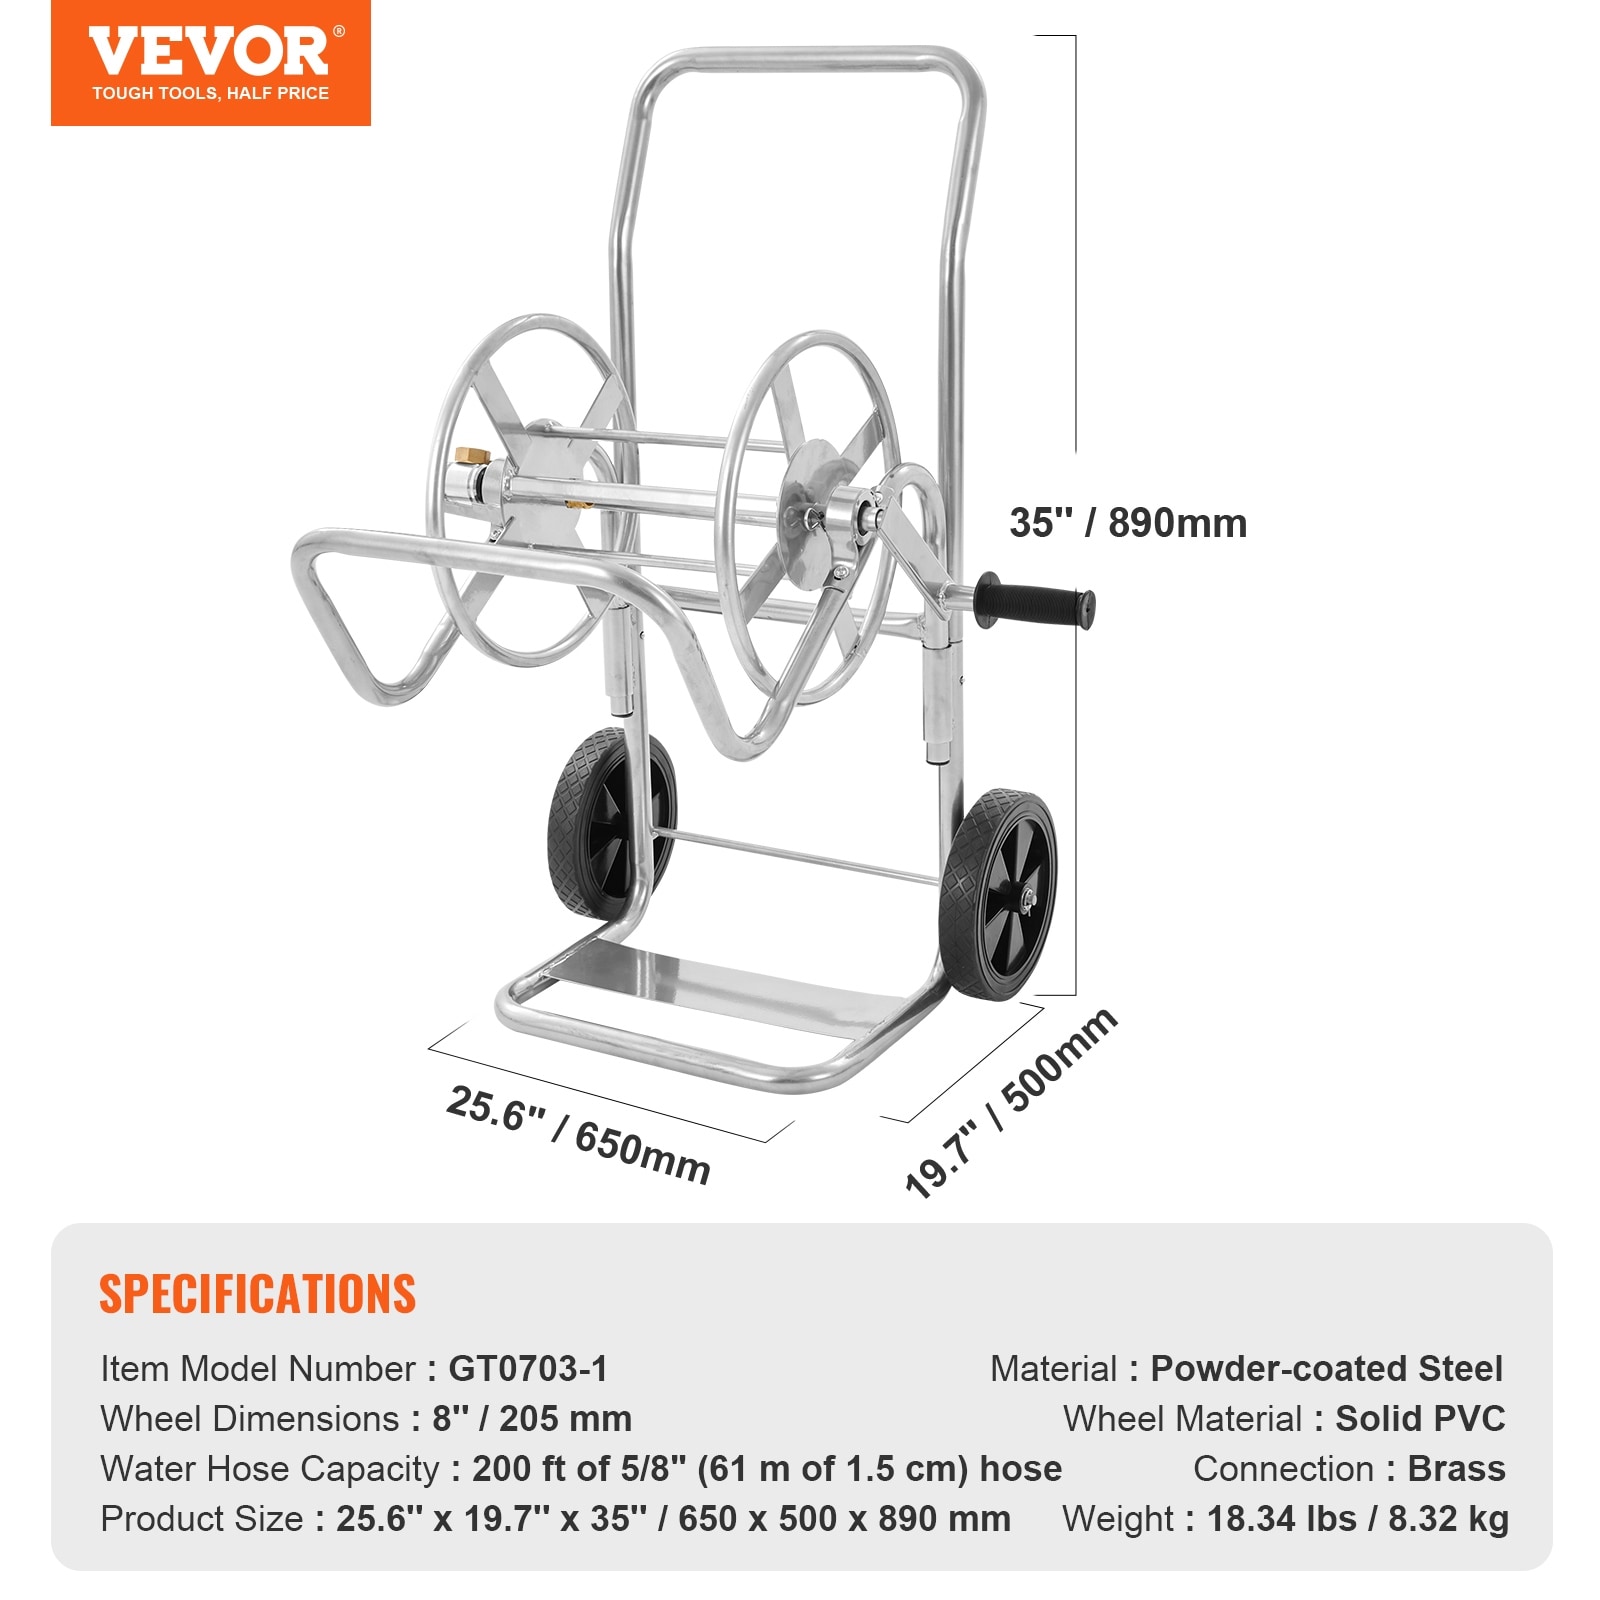 VEVOR Hose Reel Cart Hold Up to 175ft 200ft 250ft & 300ft of 5/8 Hose, Garden  Water Hose Carts Steel with Storage Basket - On Sale - Bed Bath & Beyond -  38738283